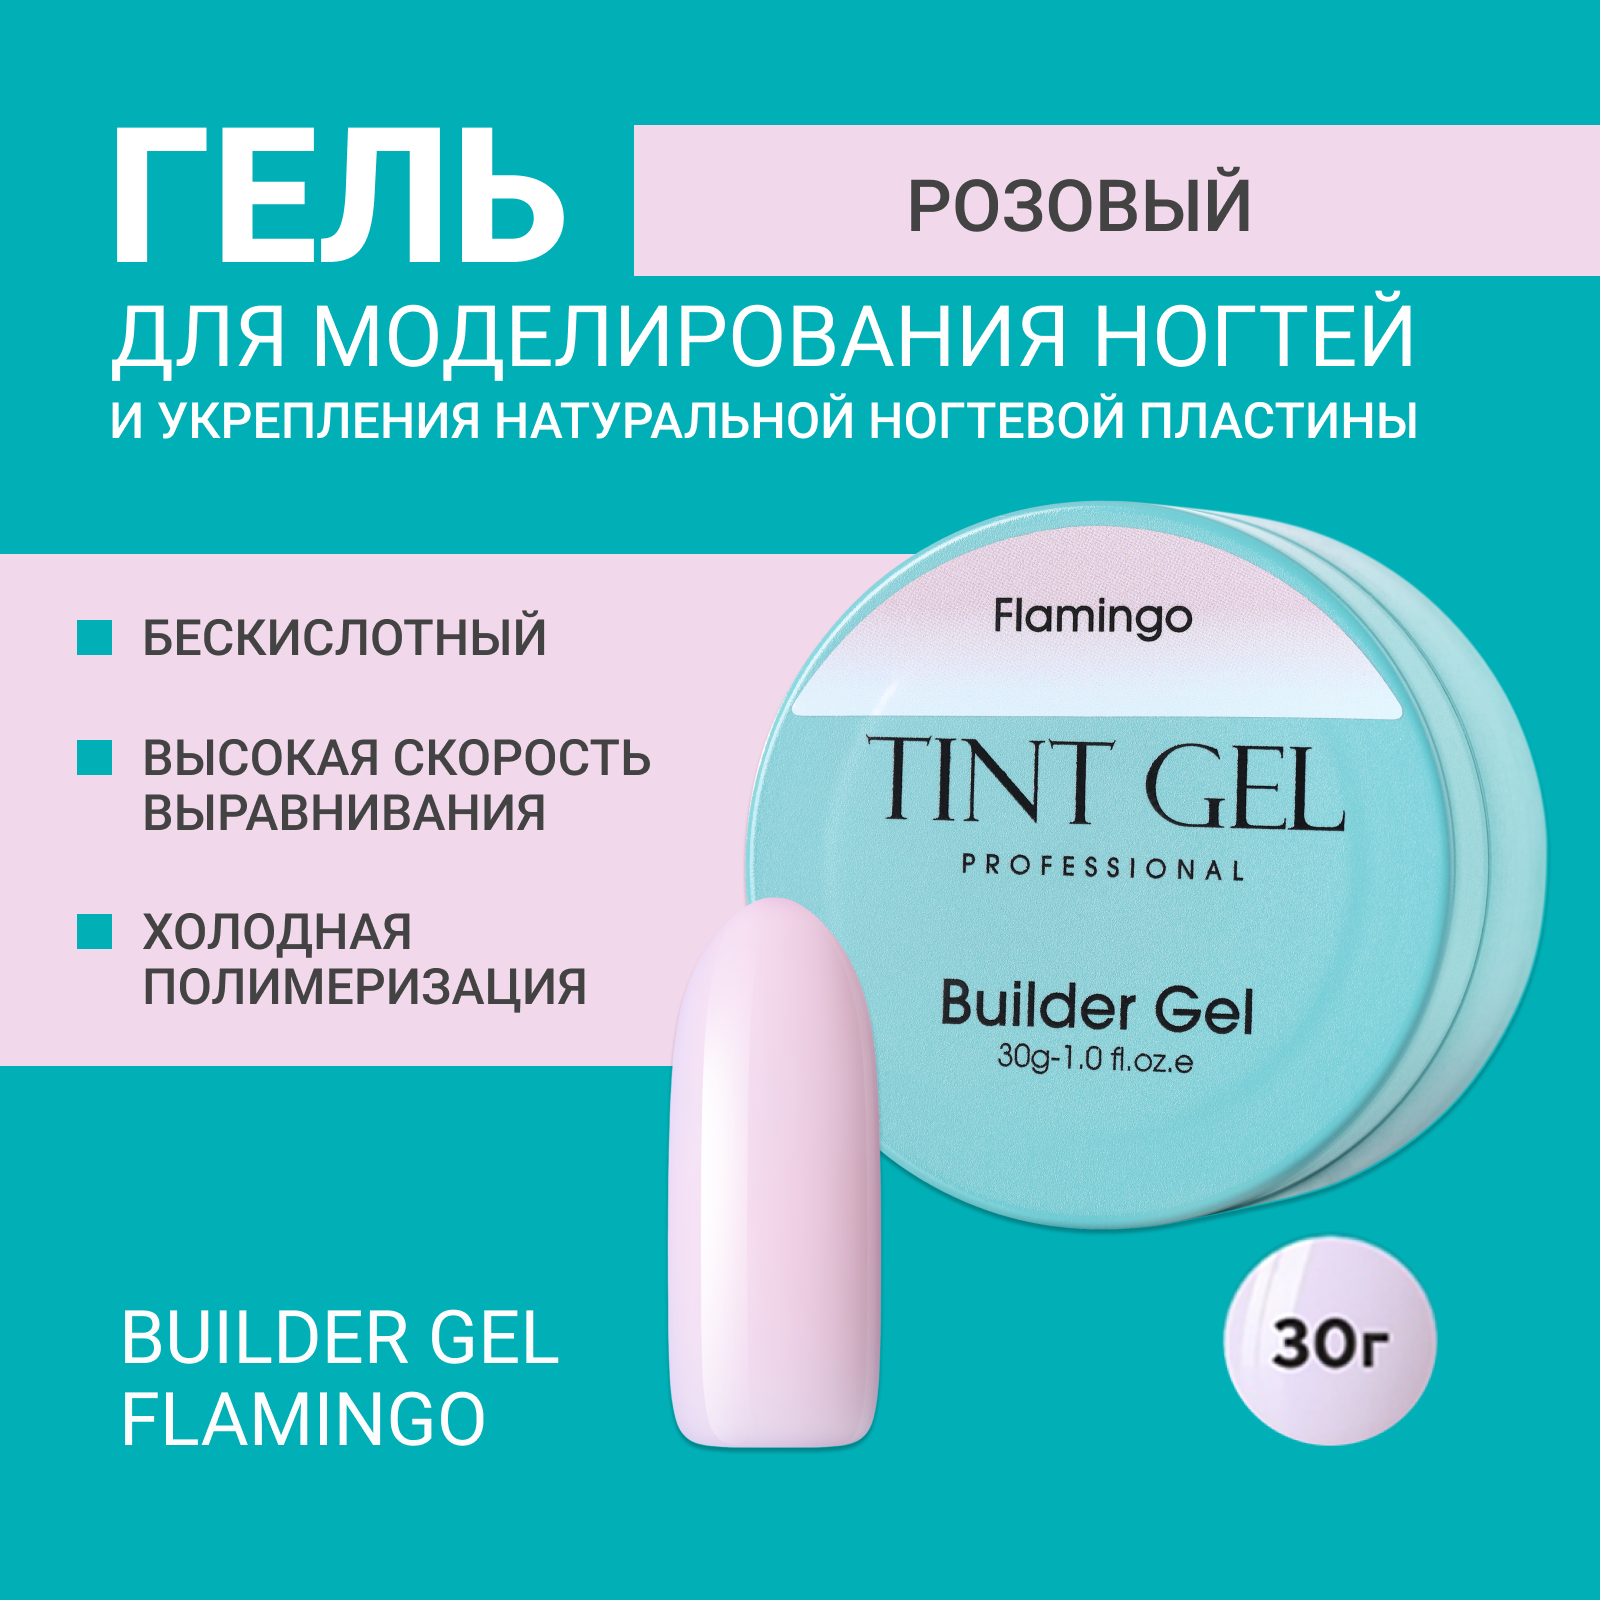 Гель Tint Gel Professional Builder gel Flamingo 30 г 30 мл акриловый поли гель набор расширение полигель набор быстрый уф жесткий желе конструктор ногти наращивание гели набор